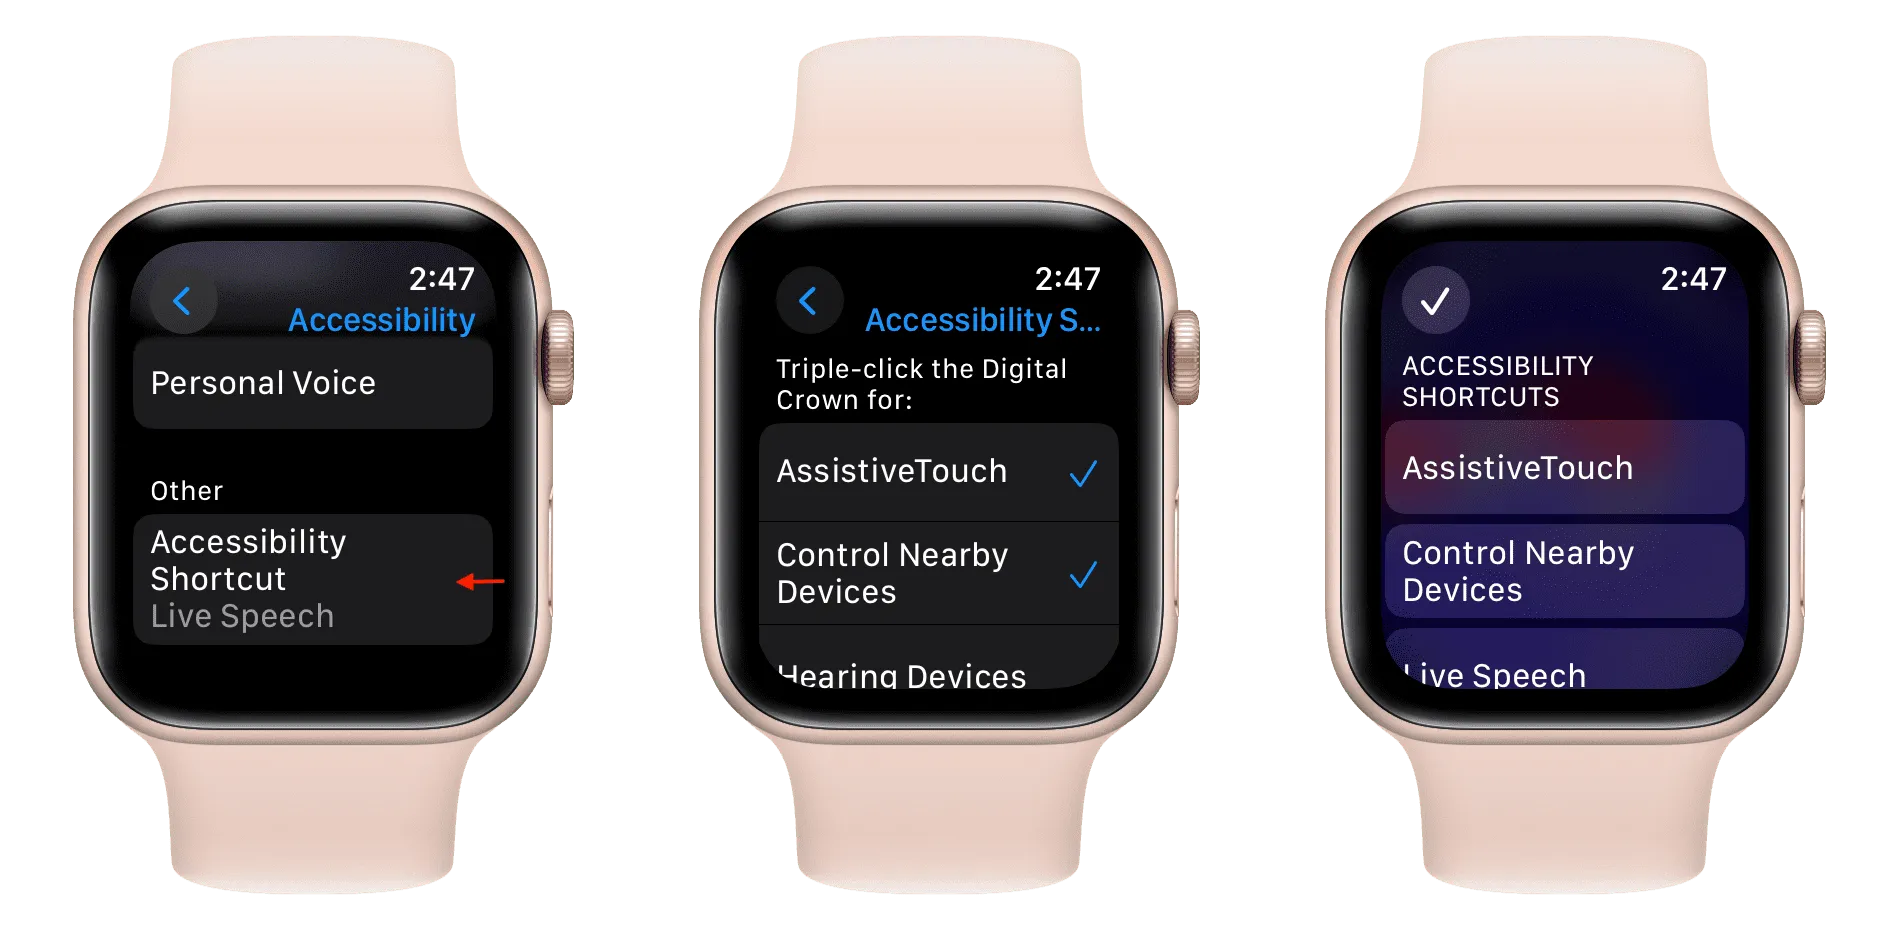 Configurações de atalho de acessibilidade no Apple Watch